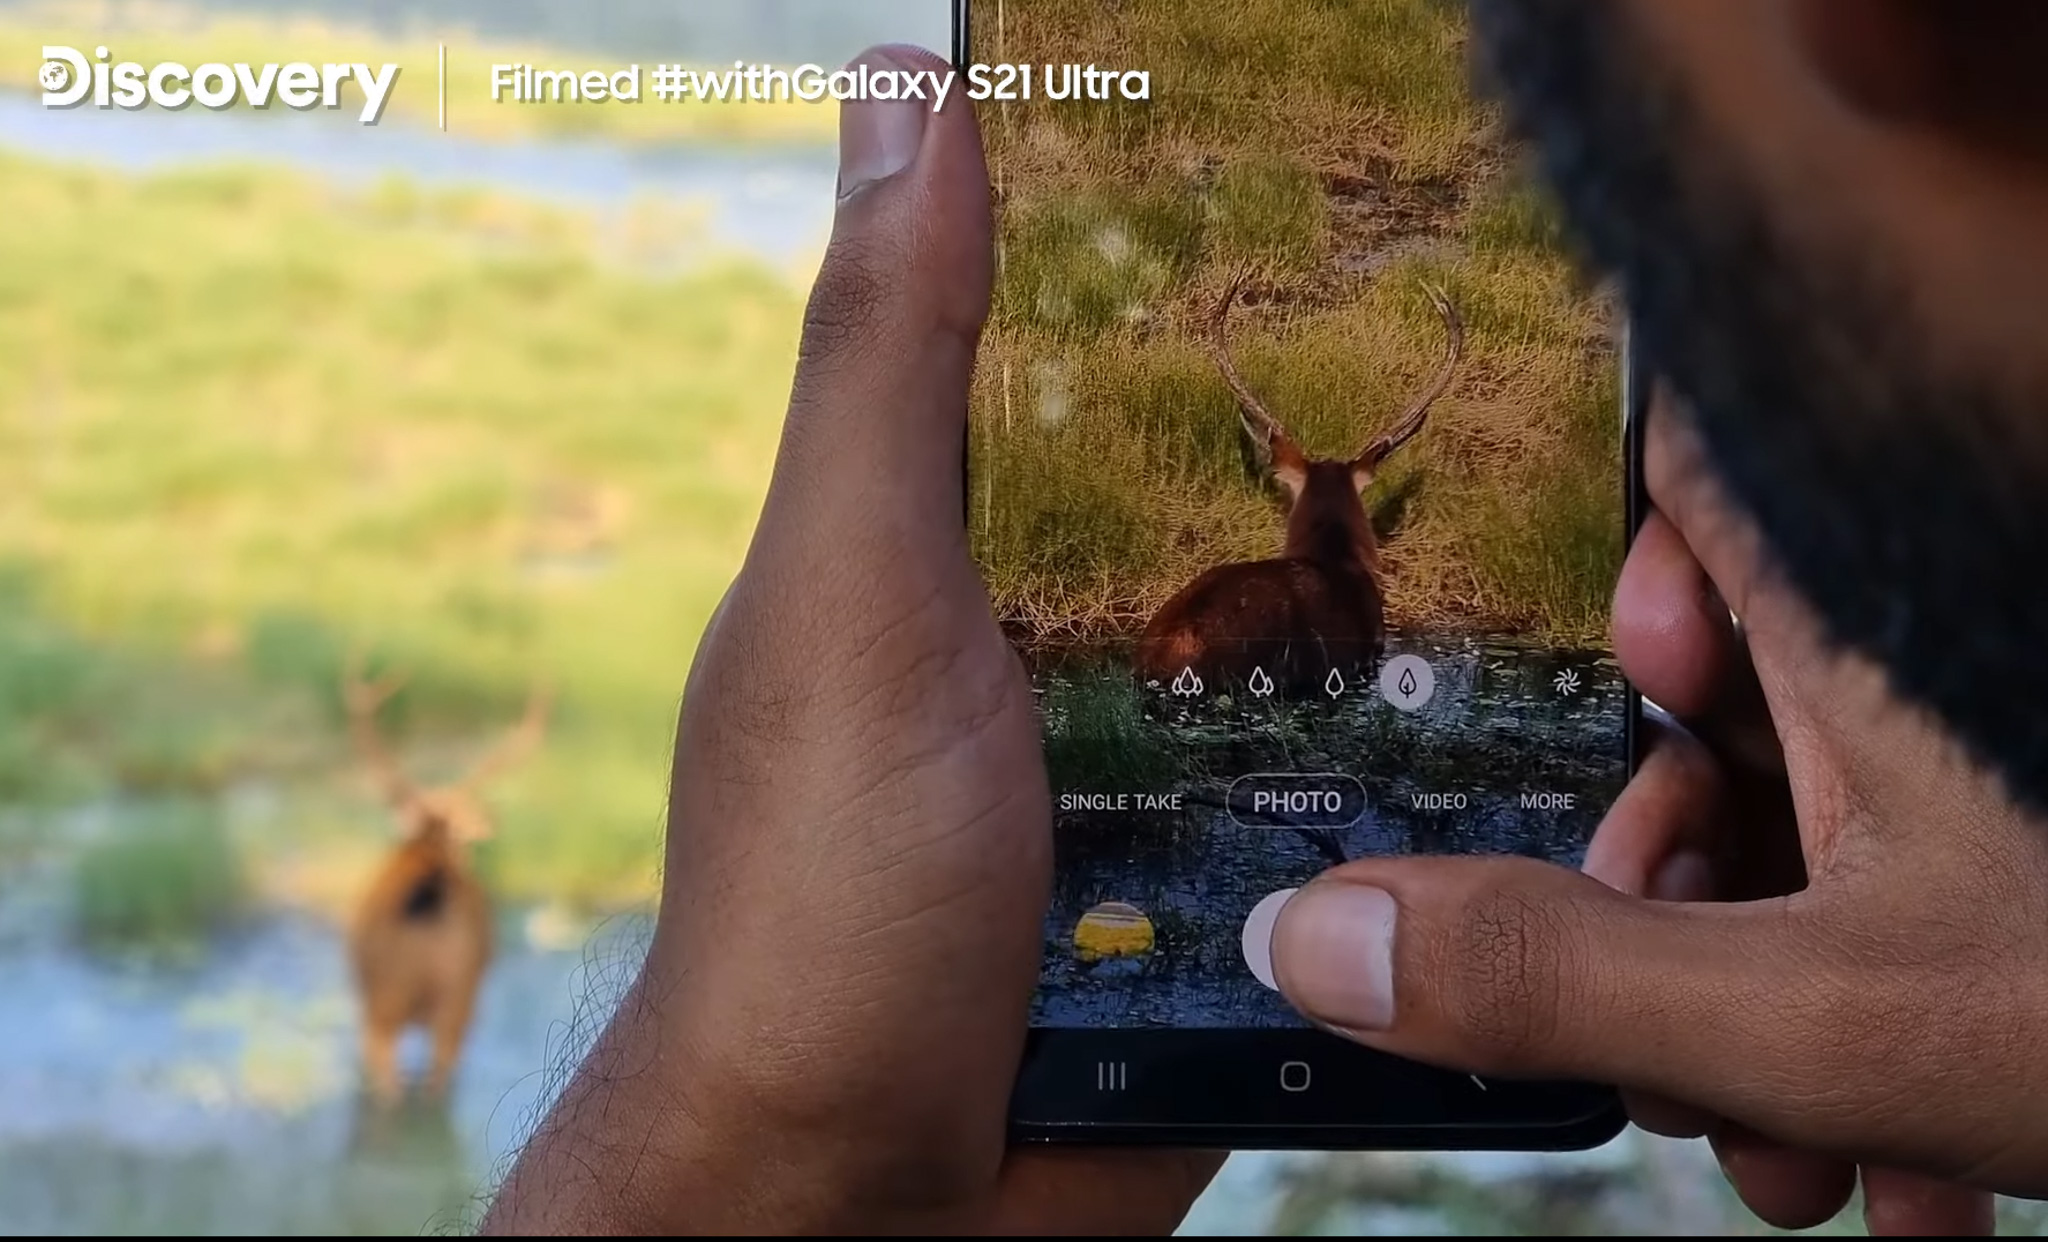 Samsung cùng Discovery ghi hình tài liệu những chú hổ bằng Galaxy S21 Ultra